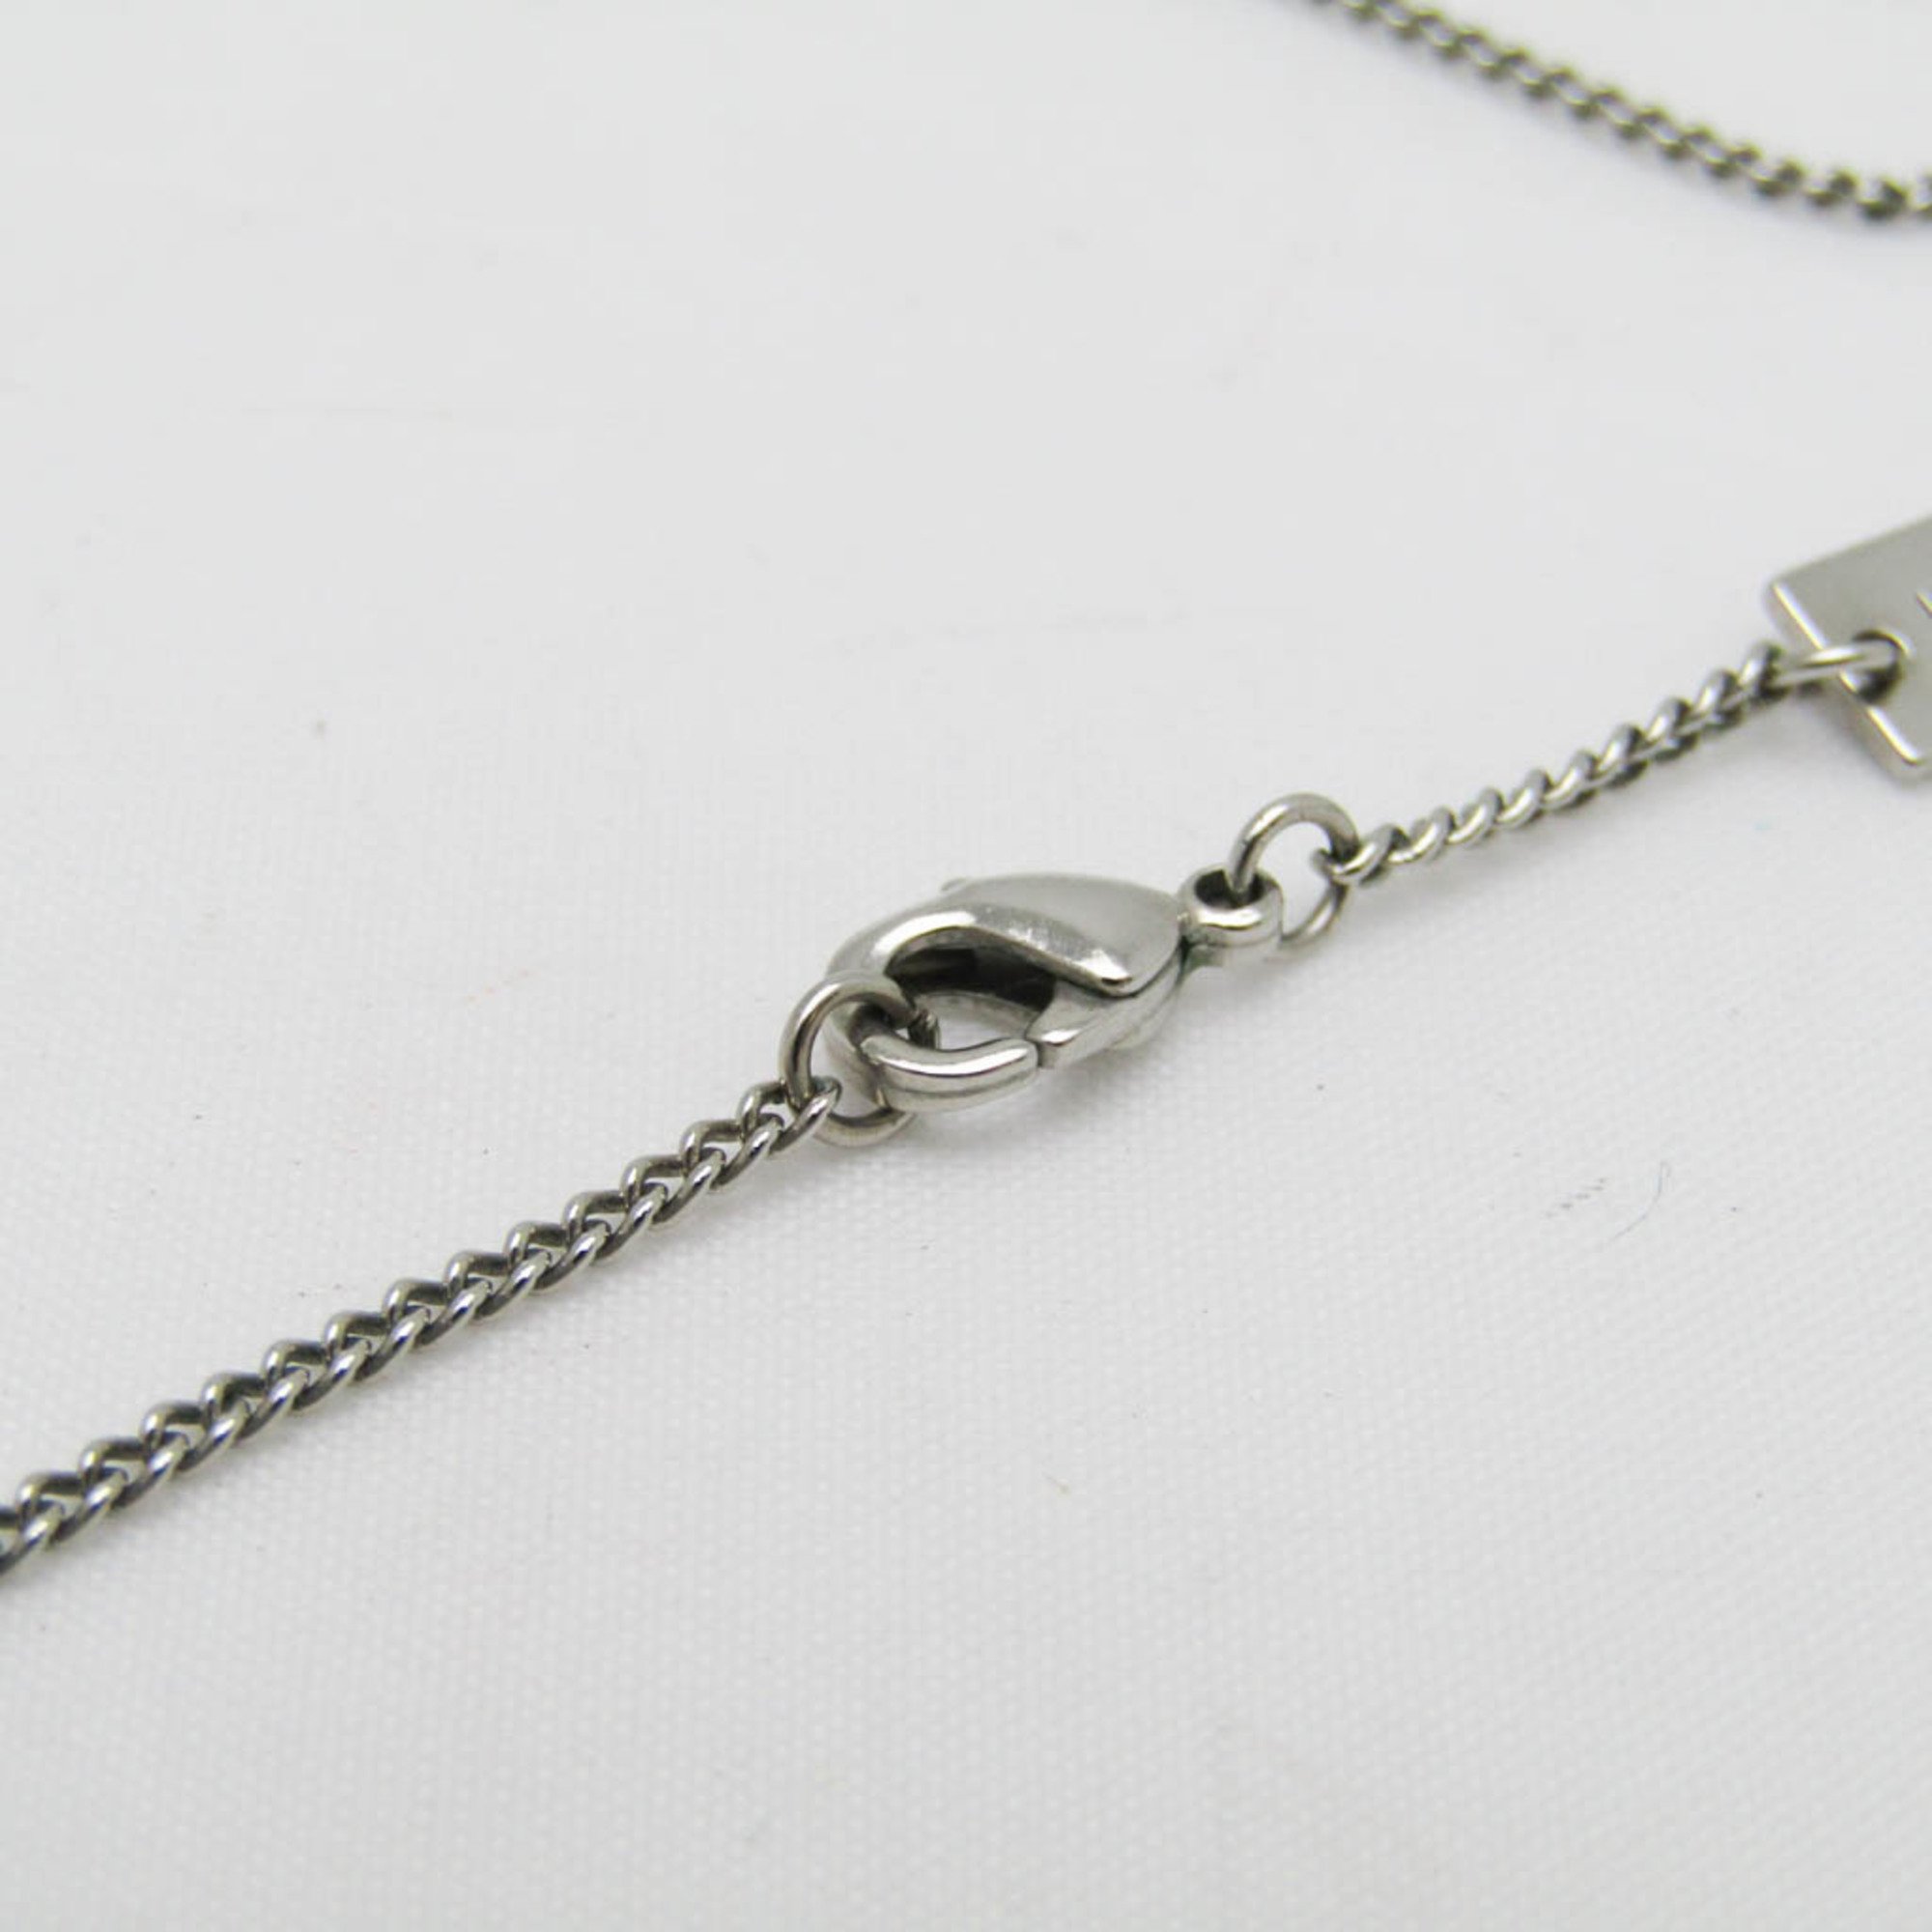 Louis Vuitton Ring Necklace Monogram Monogram Pattern Necklace M62485 Metal Women's Pendant Necklace (Silver)